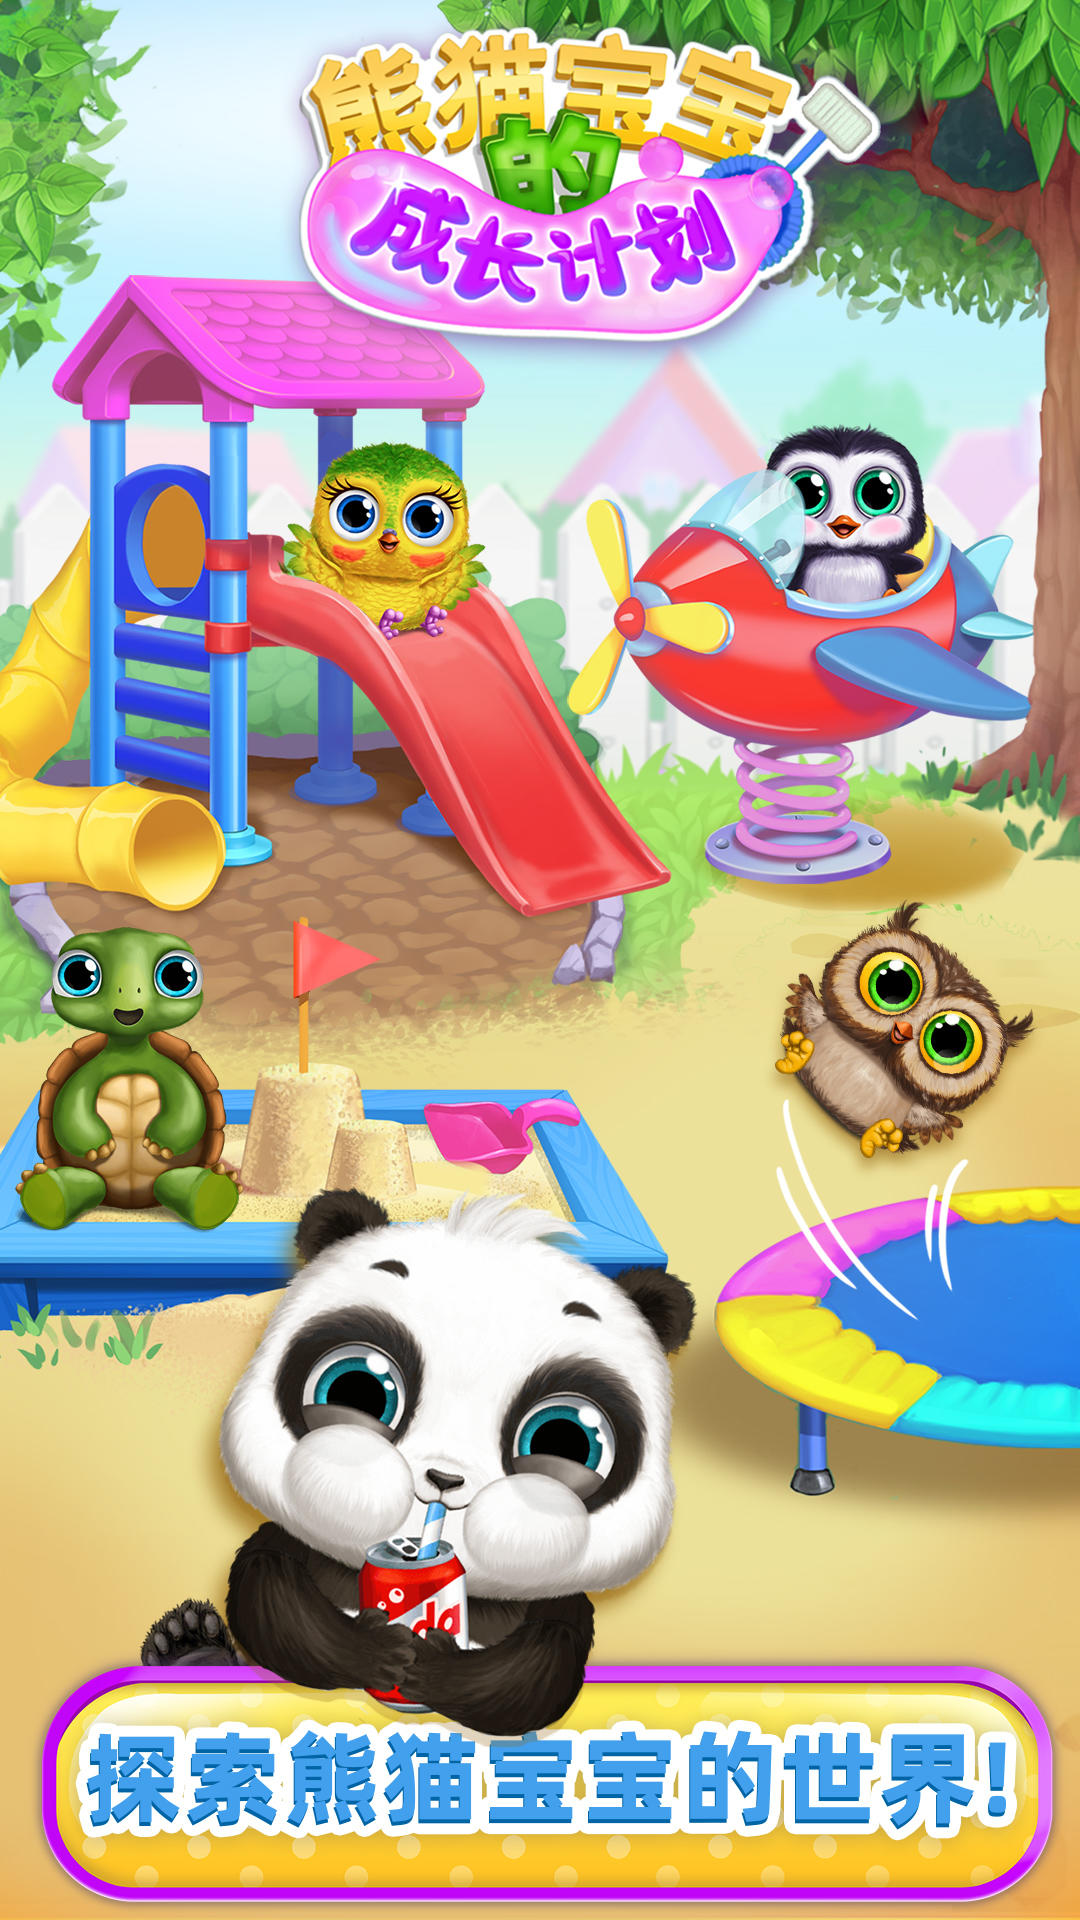 Screenshot 1 of Rencana pertumbuhan bayi panda 